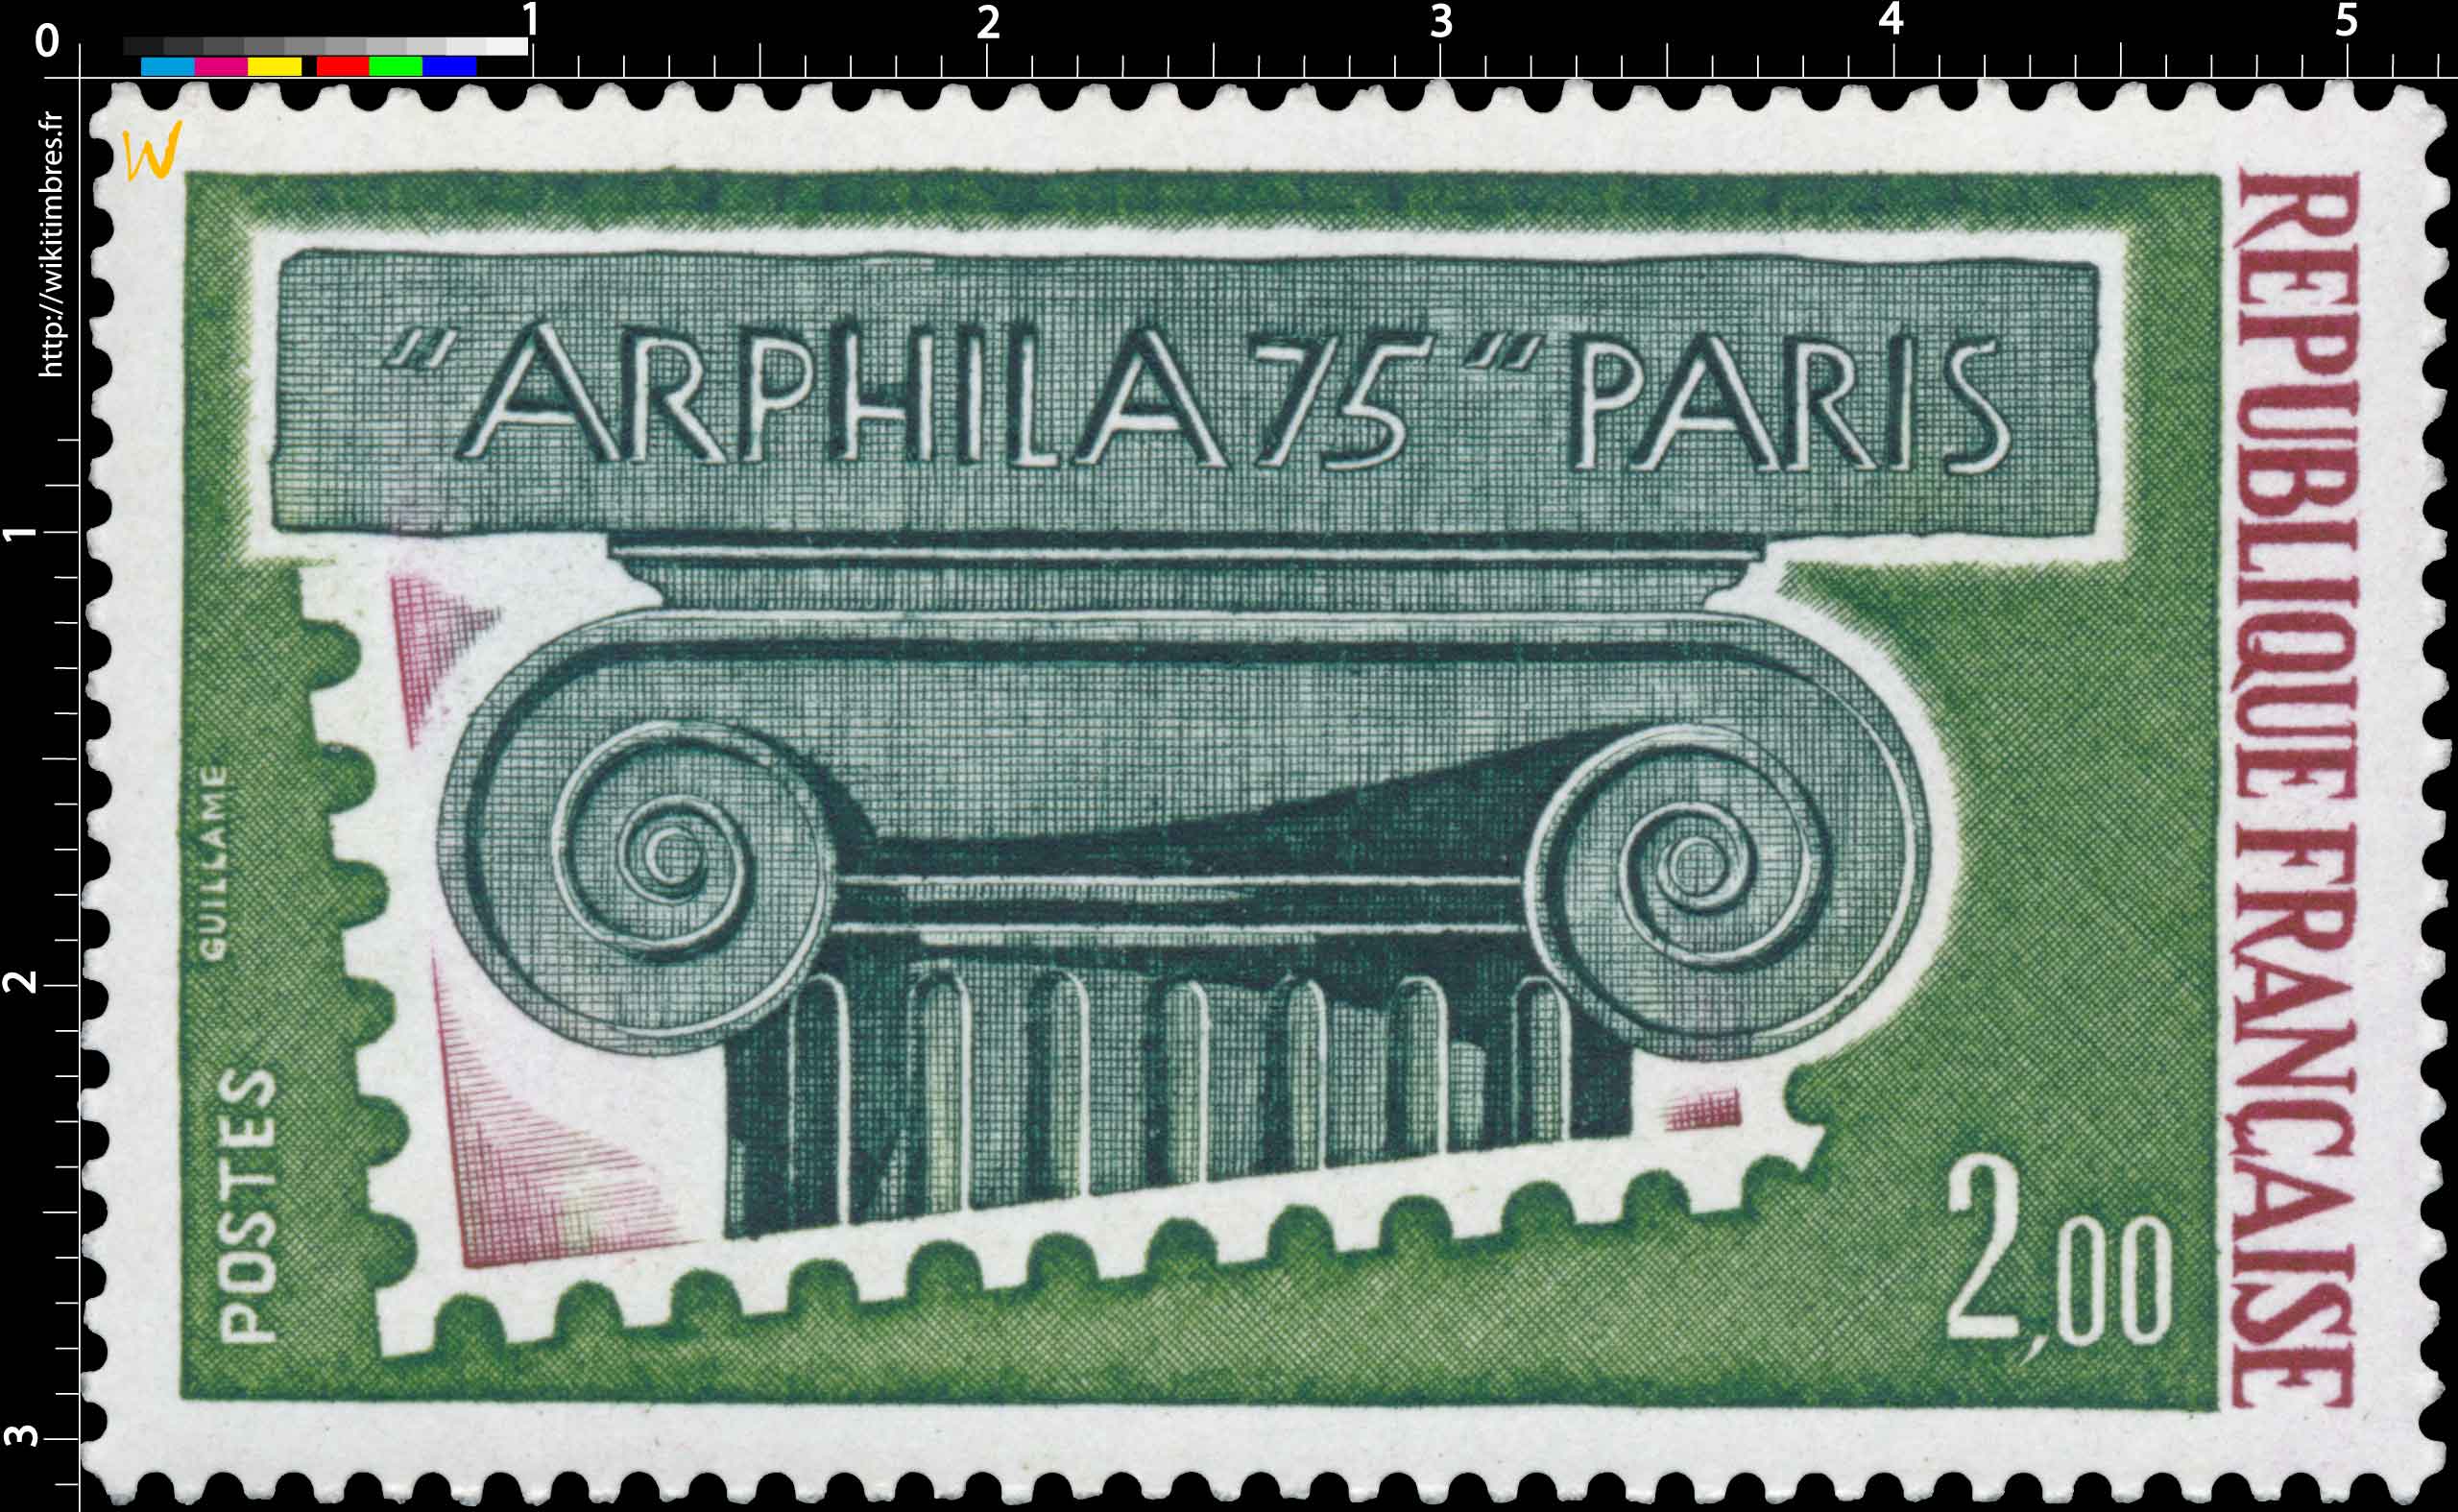 ARPHILA 75 PARIS